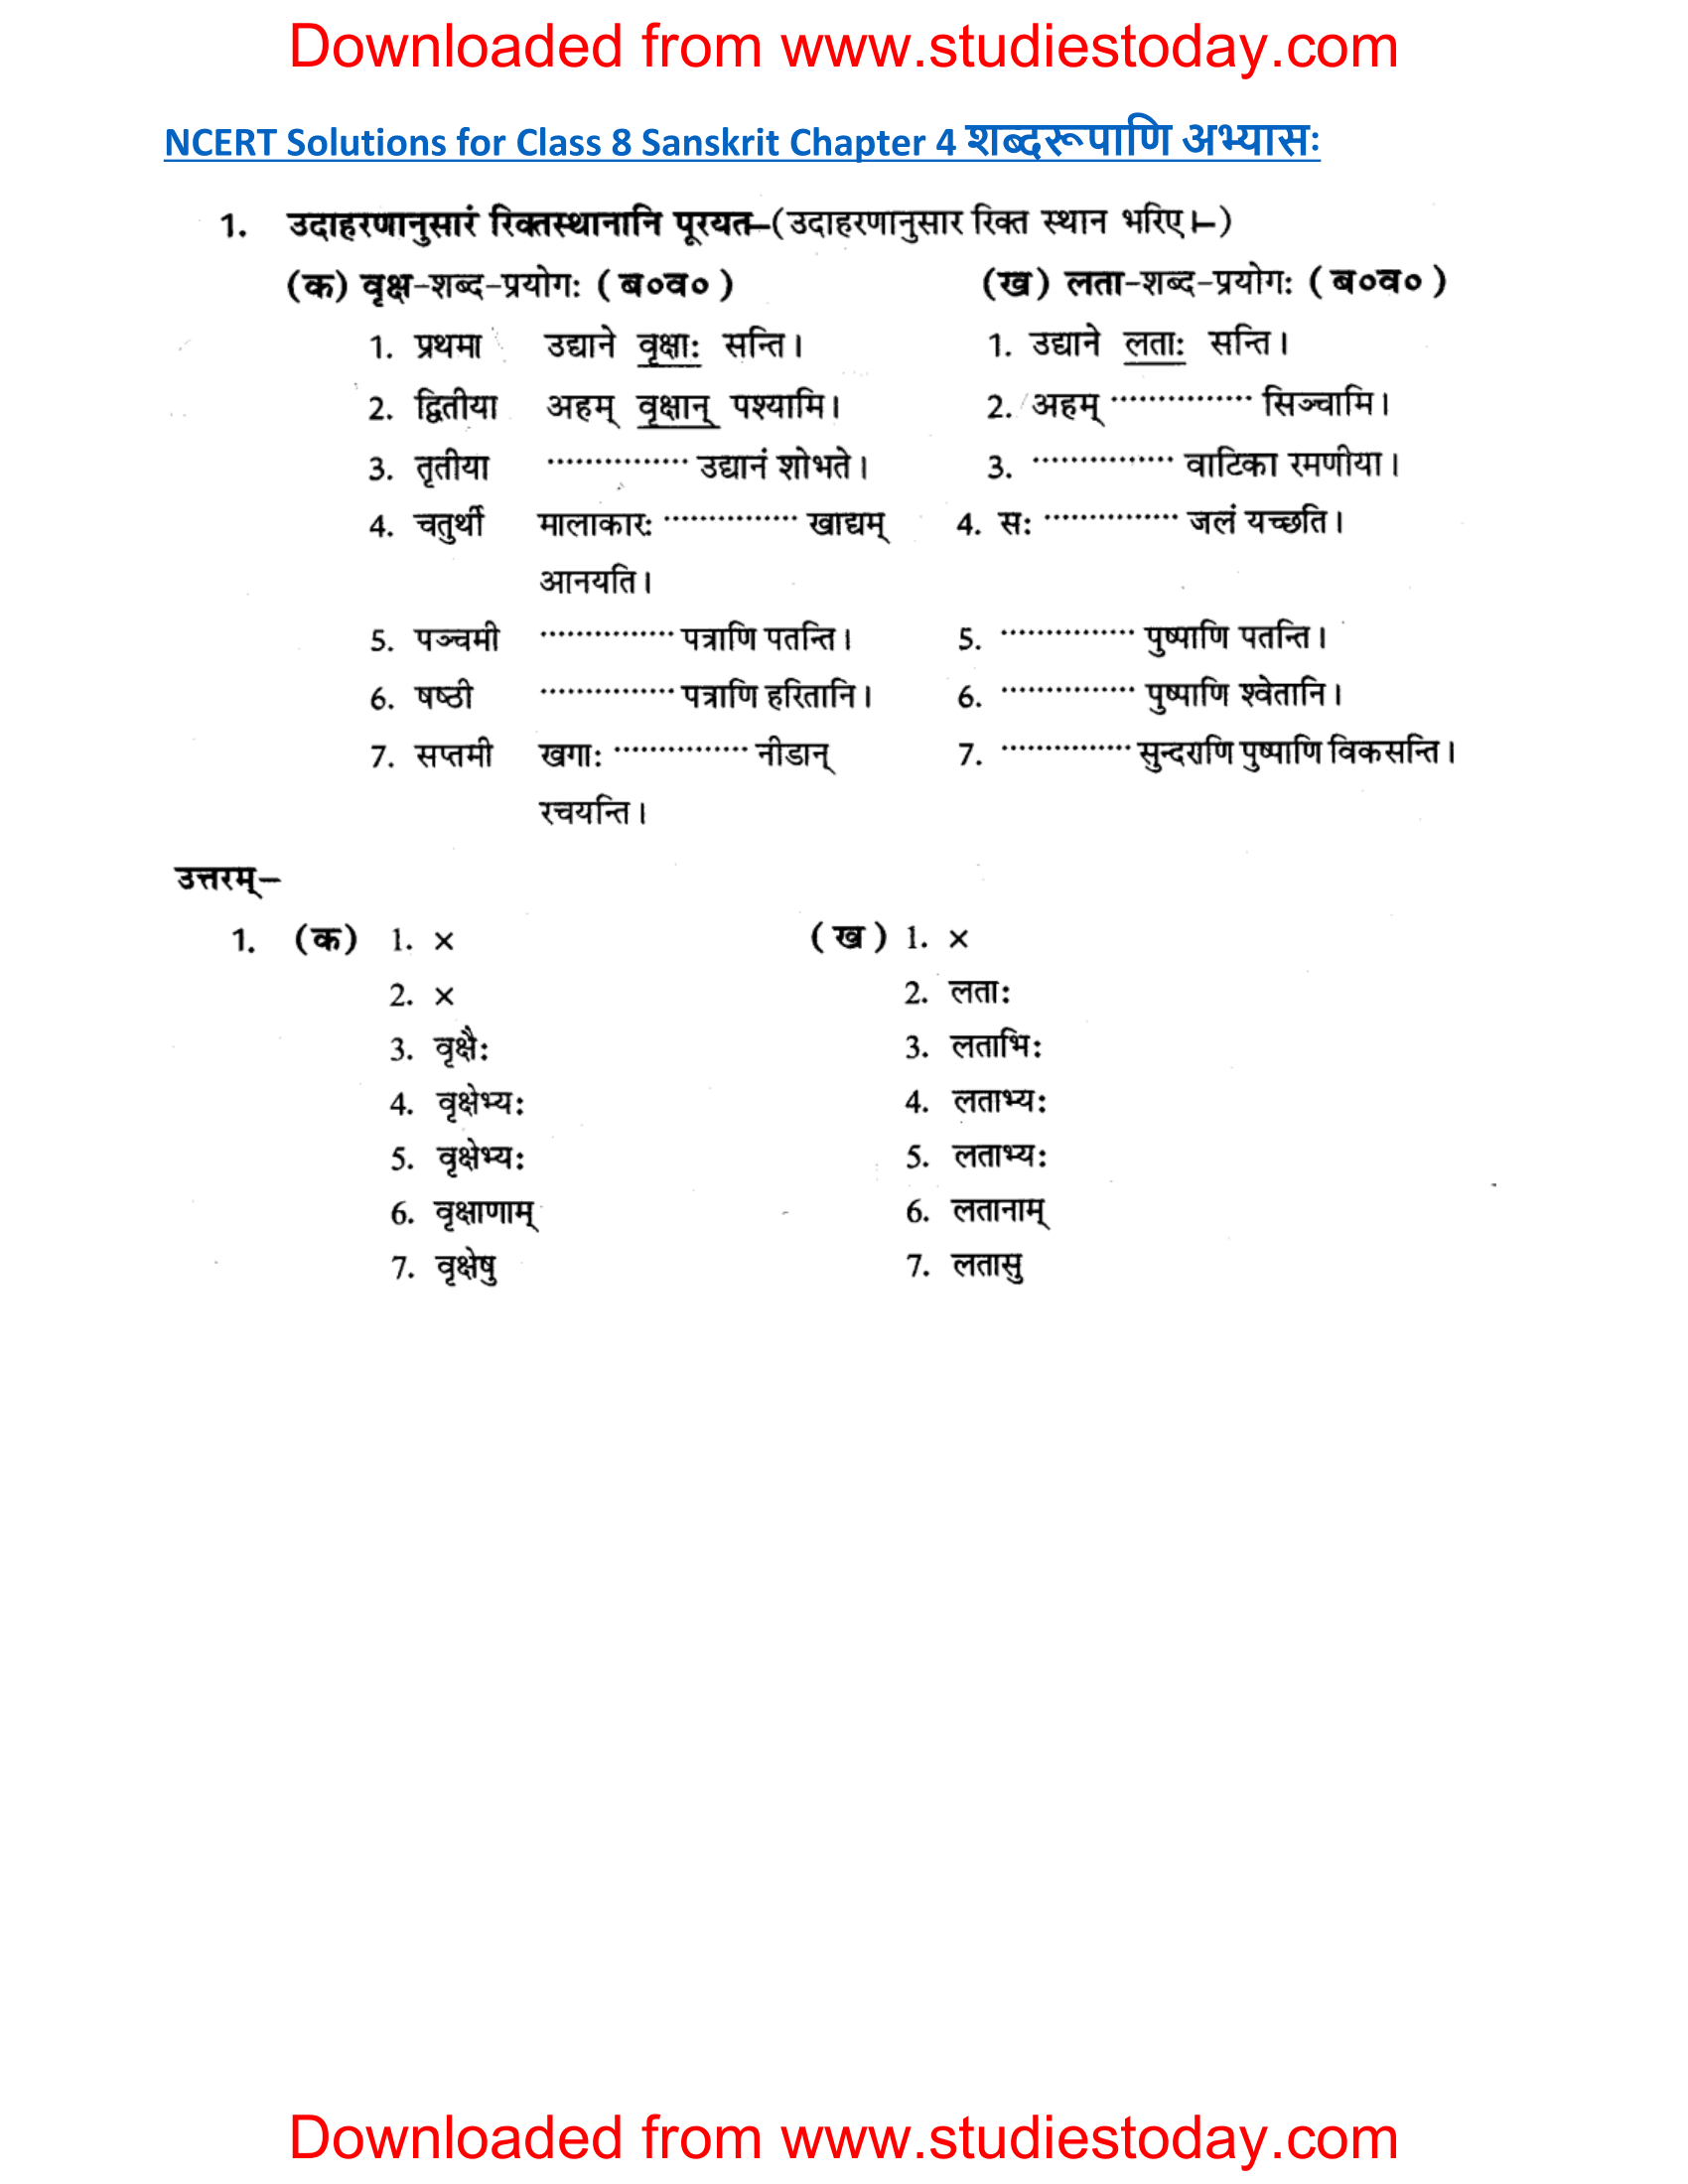 ncert-solutions-class-8-sanskrit-chapter-4-shabdrupani-abhyas-1